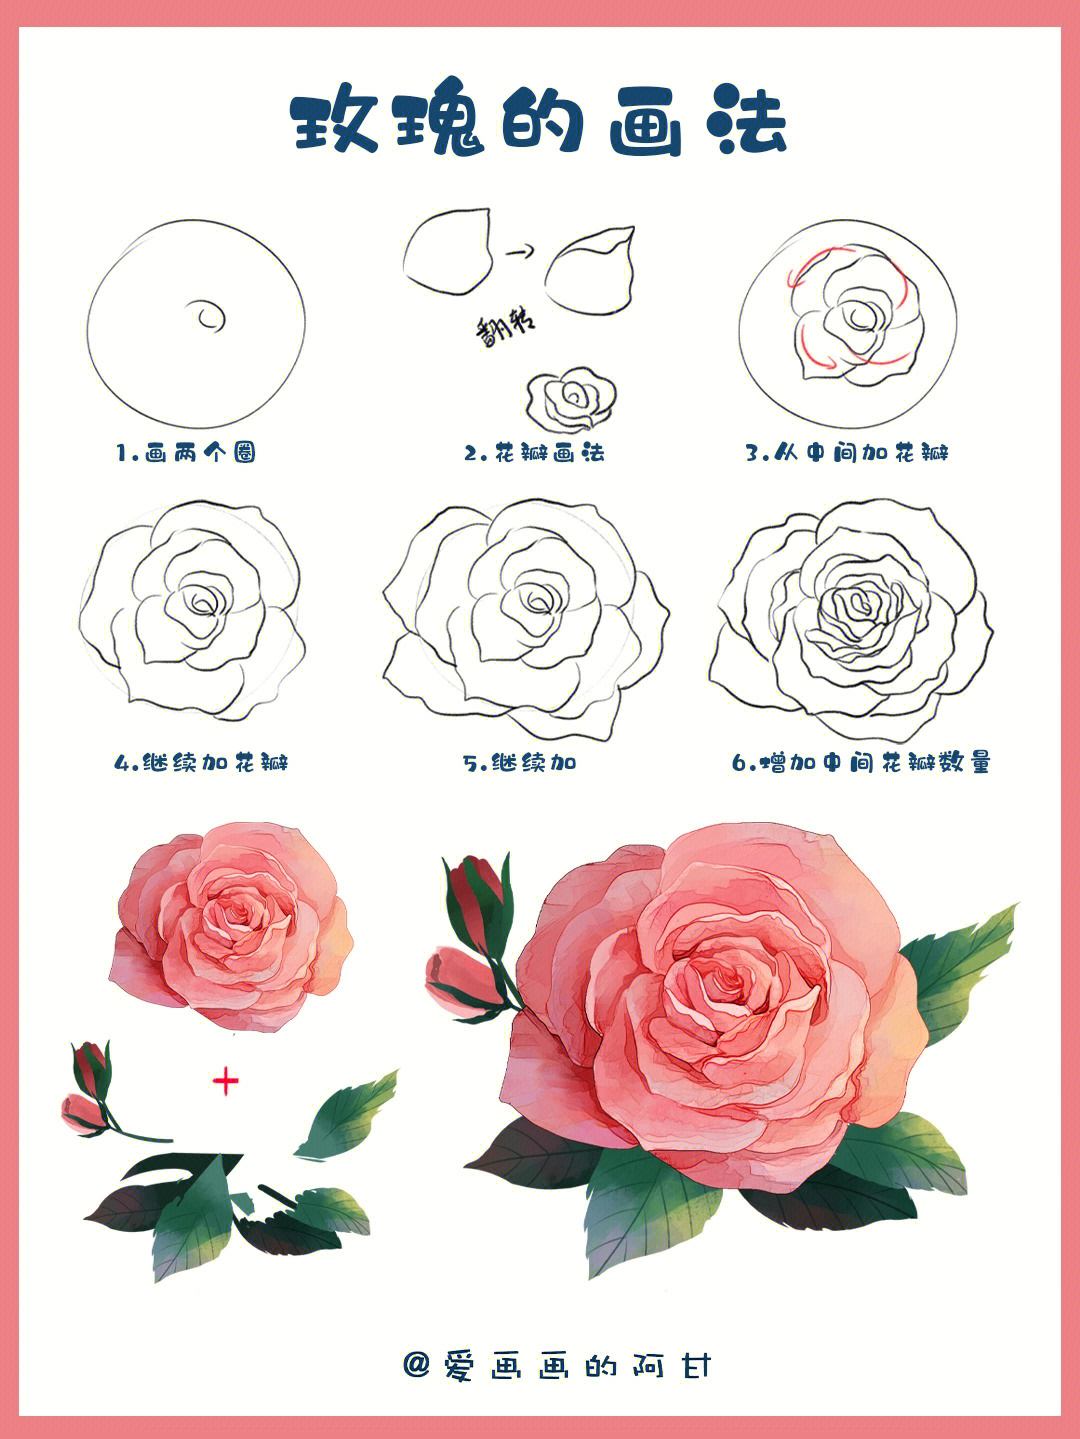 今天借用酥卷老师画的玫瑰花给你们做一篇分解过程步骤